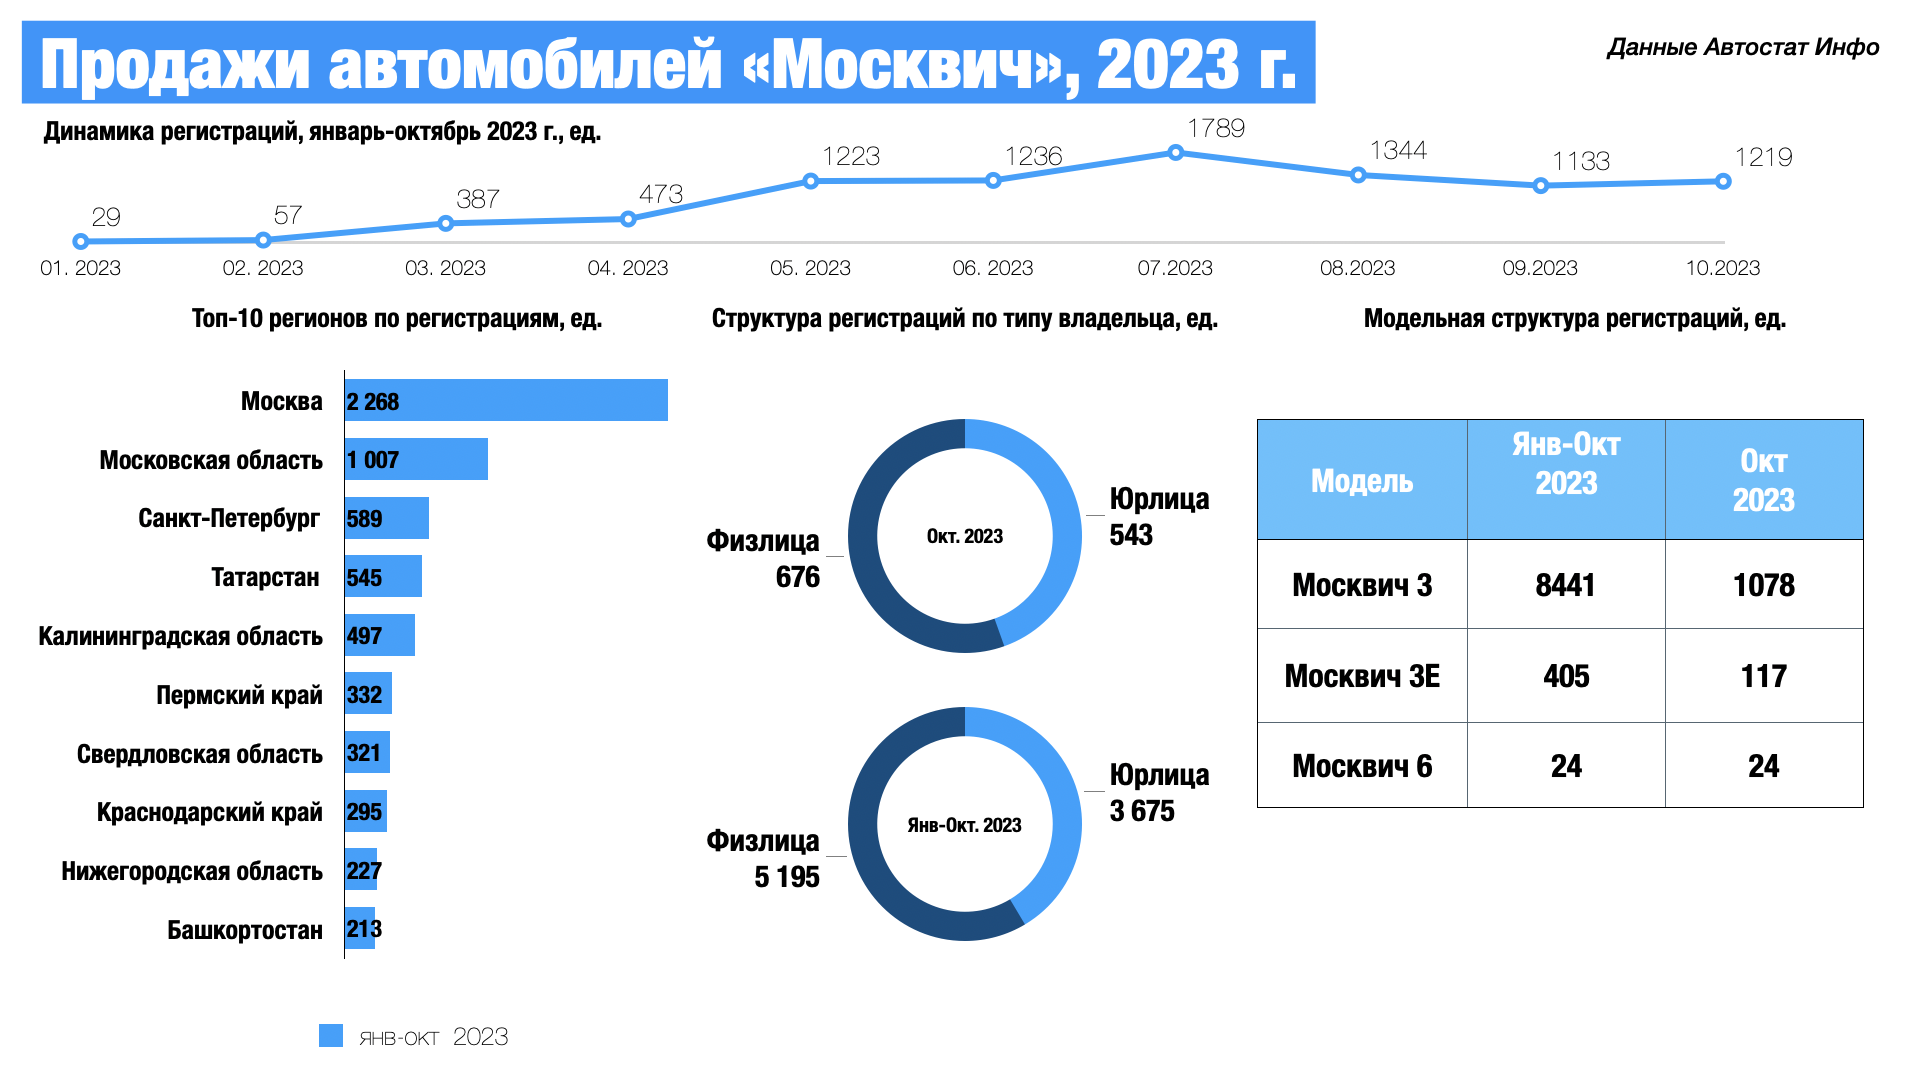 Россияне купили 8 870 автомобилей Москвич в 2023 году